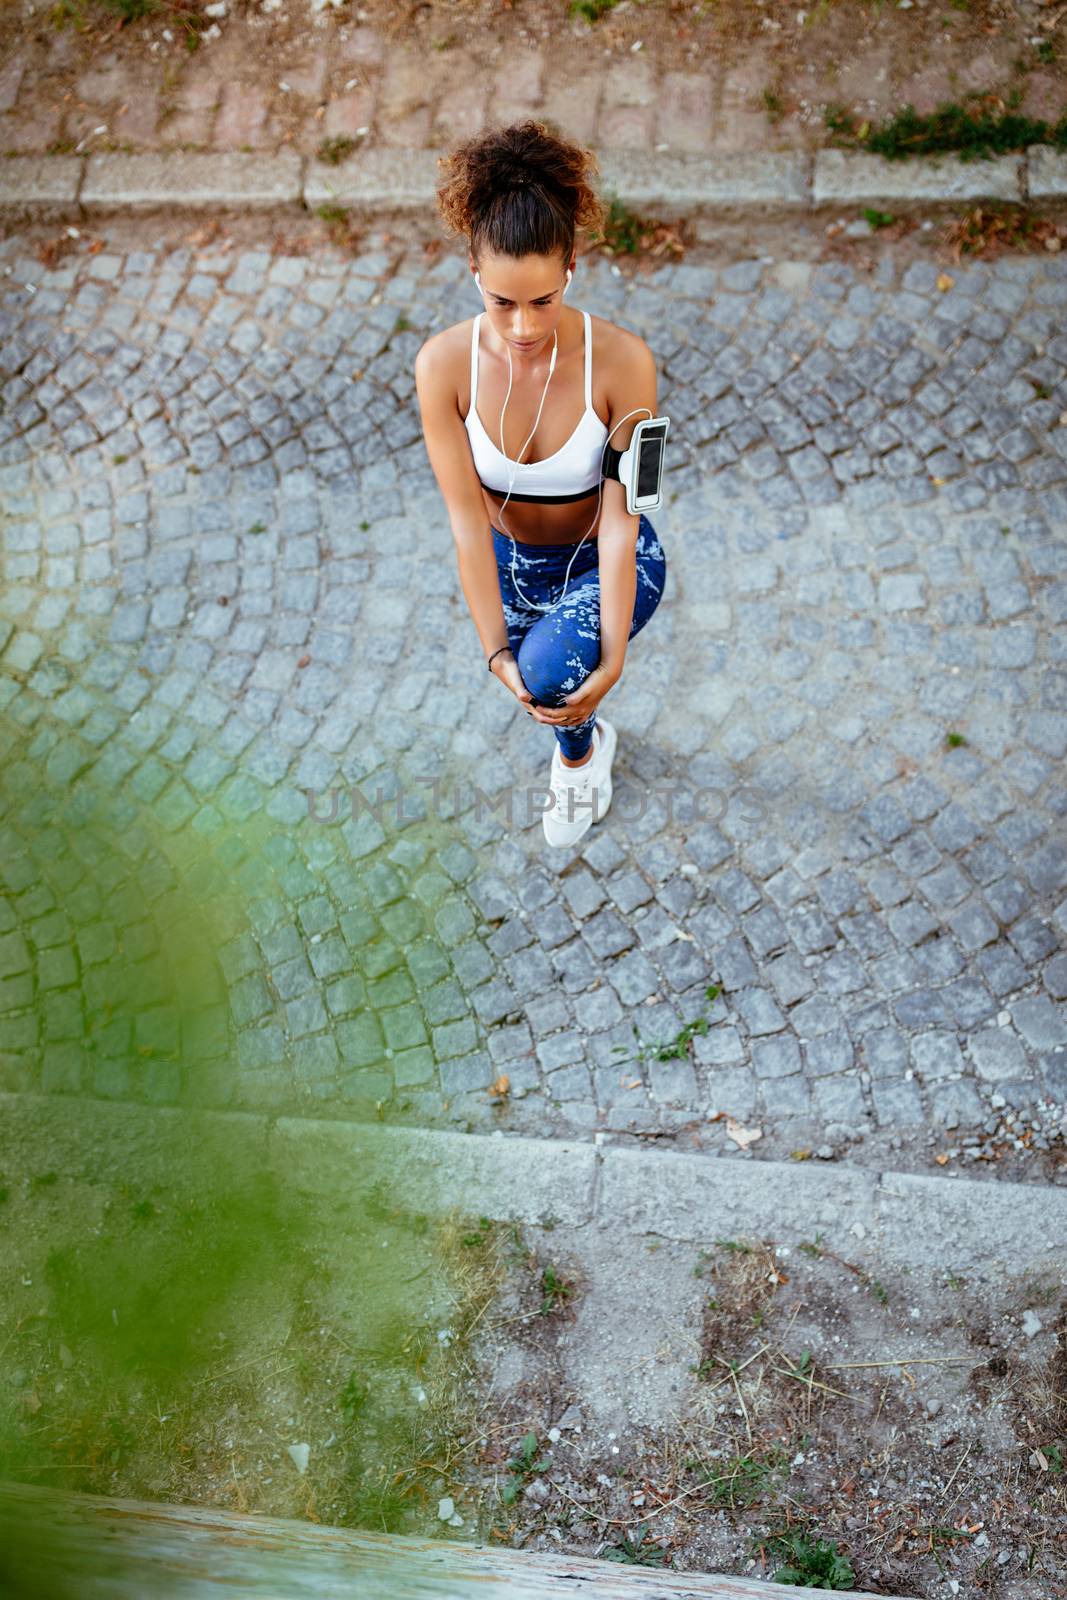 Urban Runner Girl Stretching by MilanMarkovic78